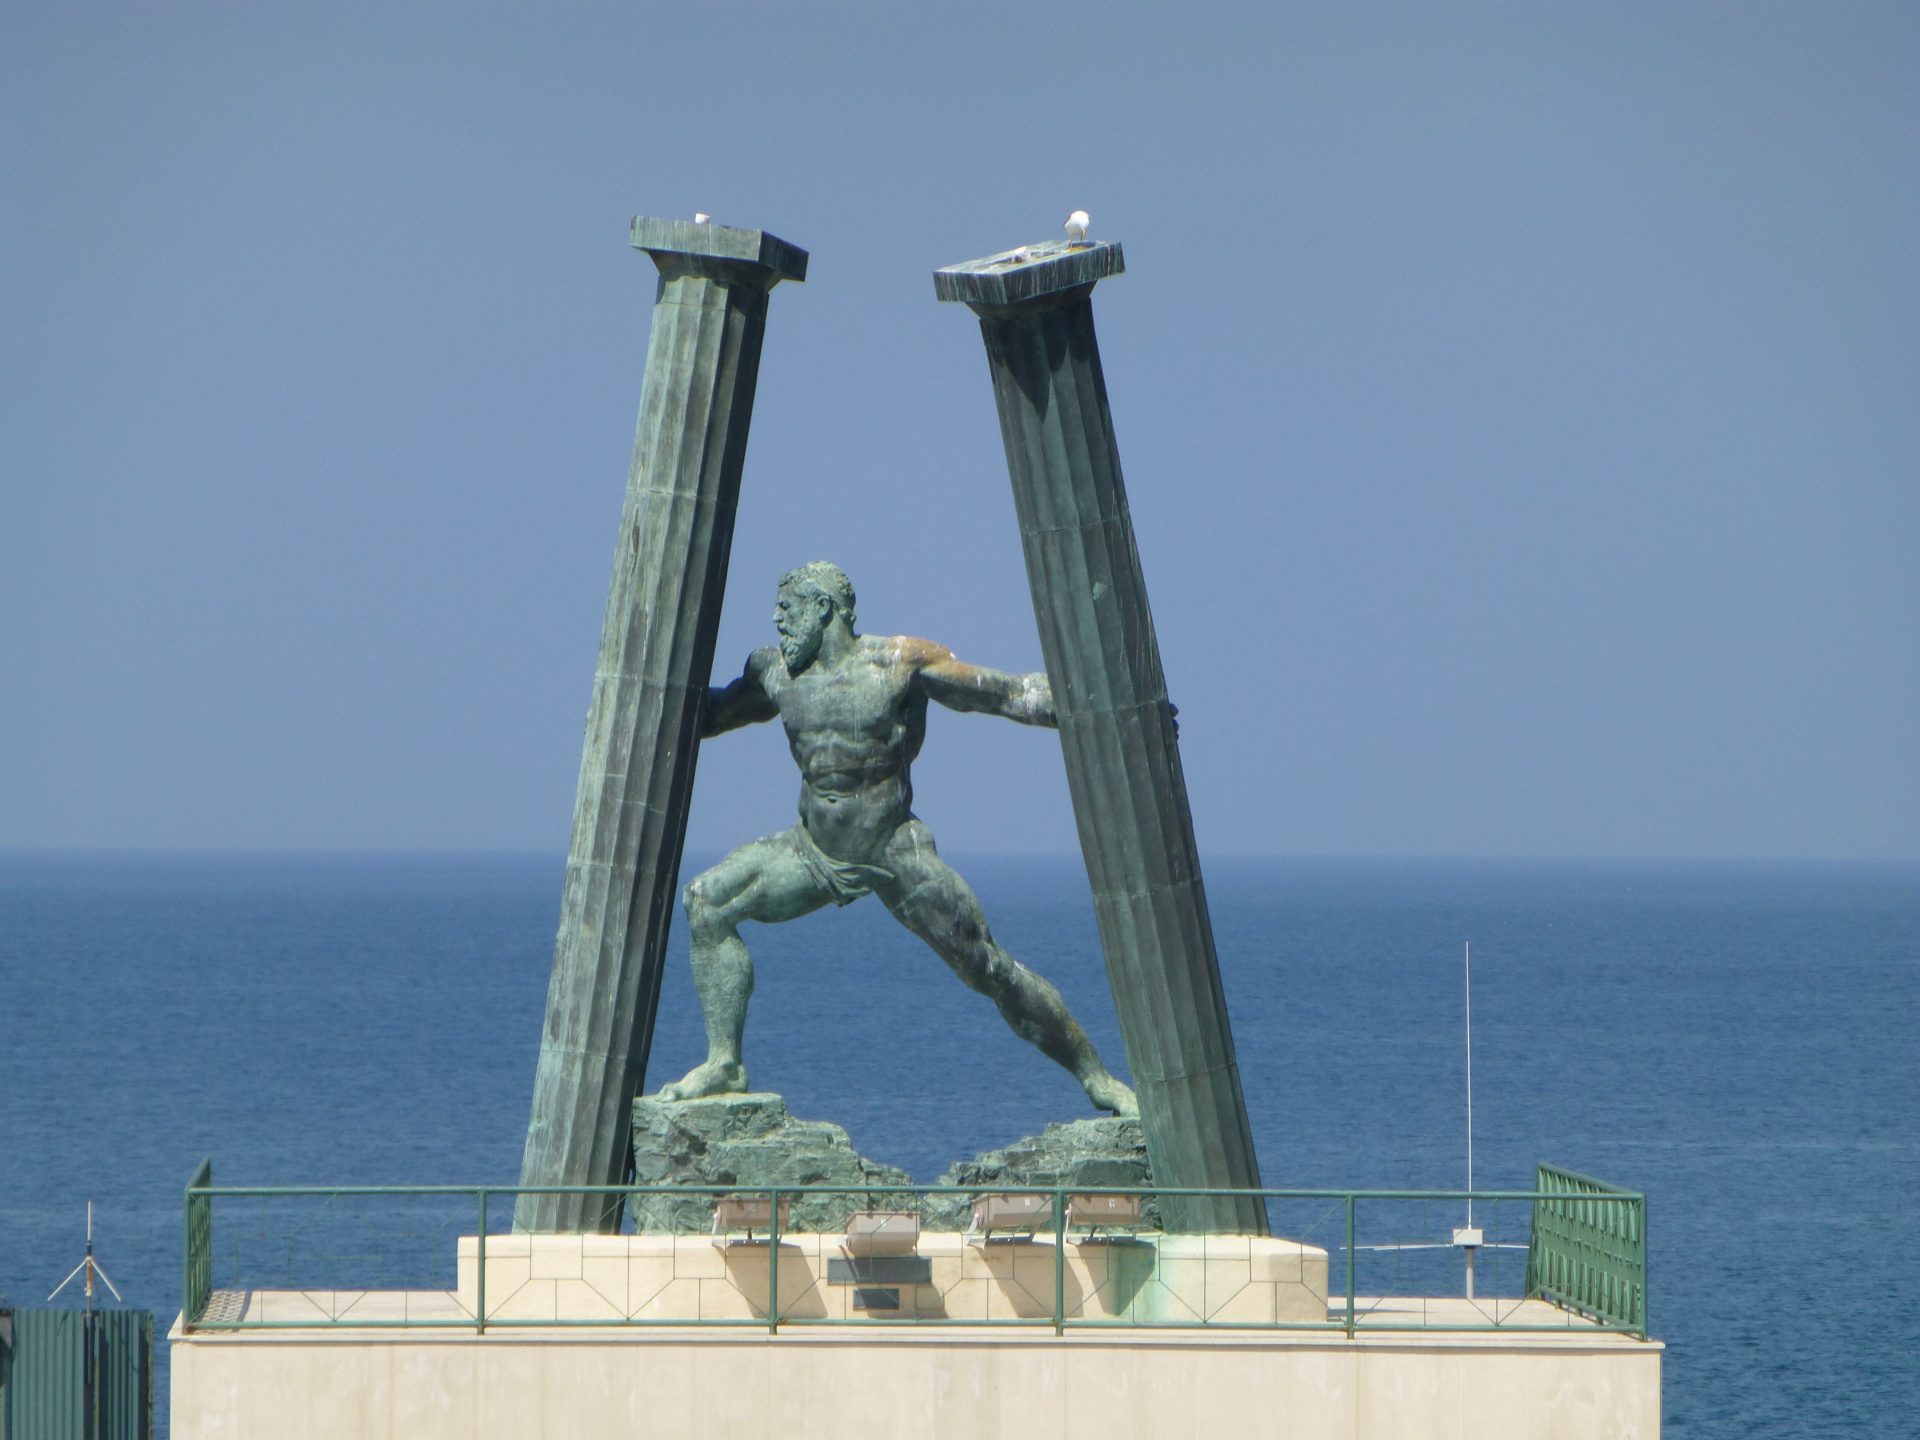 Pillars of Hercules in Ceuta | Pillars of hercules, Hercules statue, Ceuta